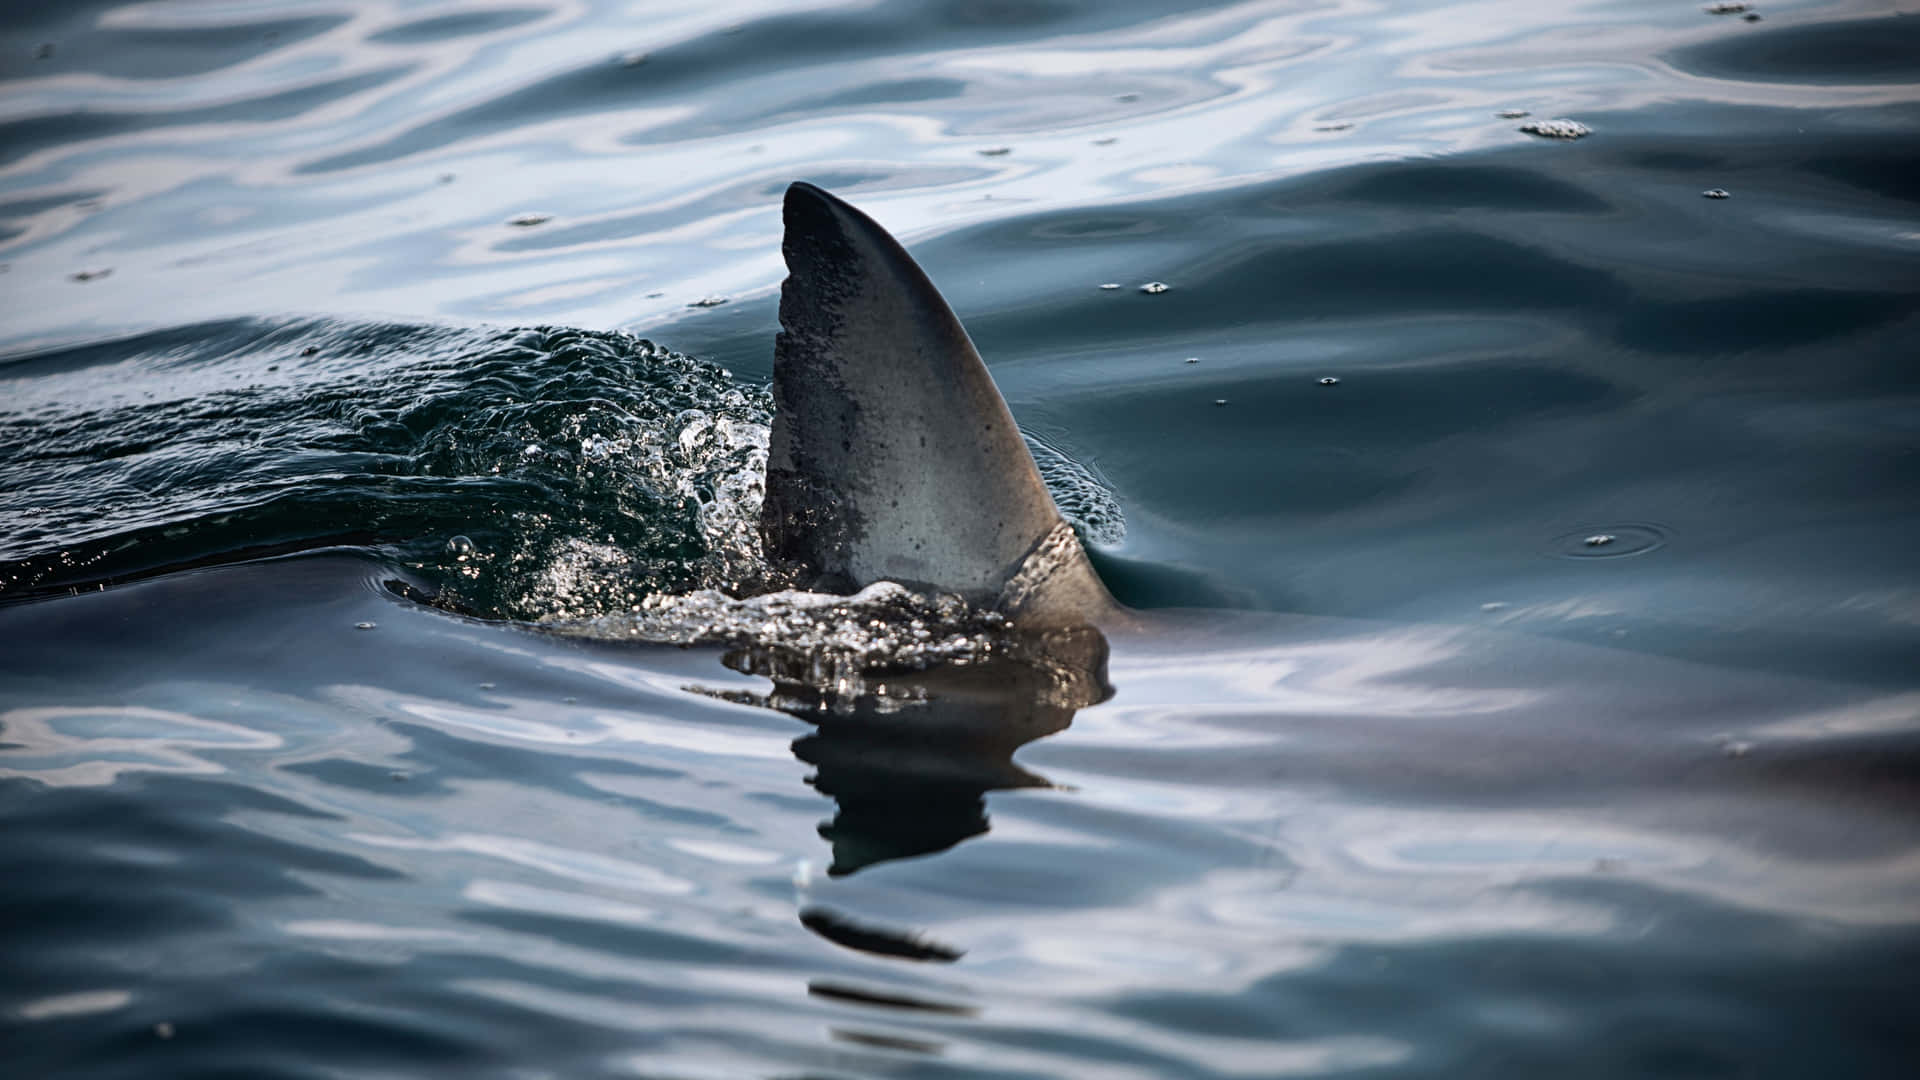 Cuidadocon El Gran Tiburón Blanco, El Pez Depredador Más Grande Conocido En El Océano.